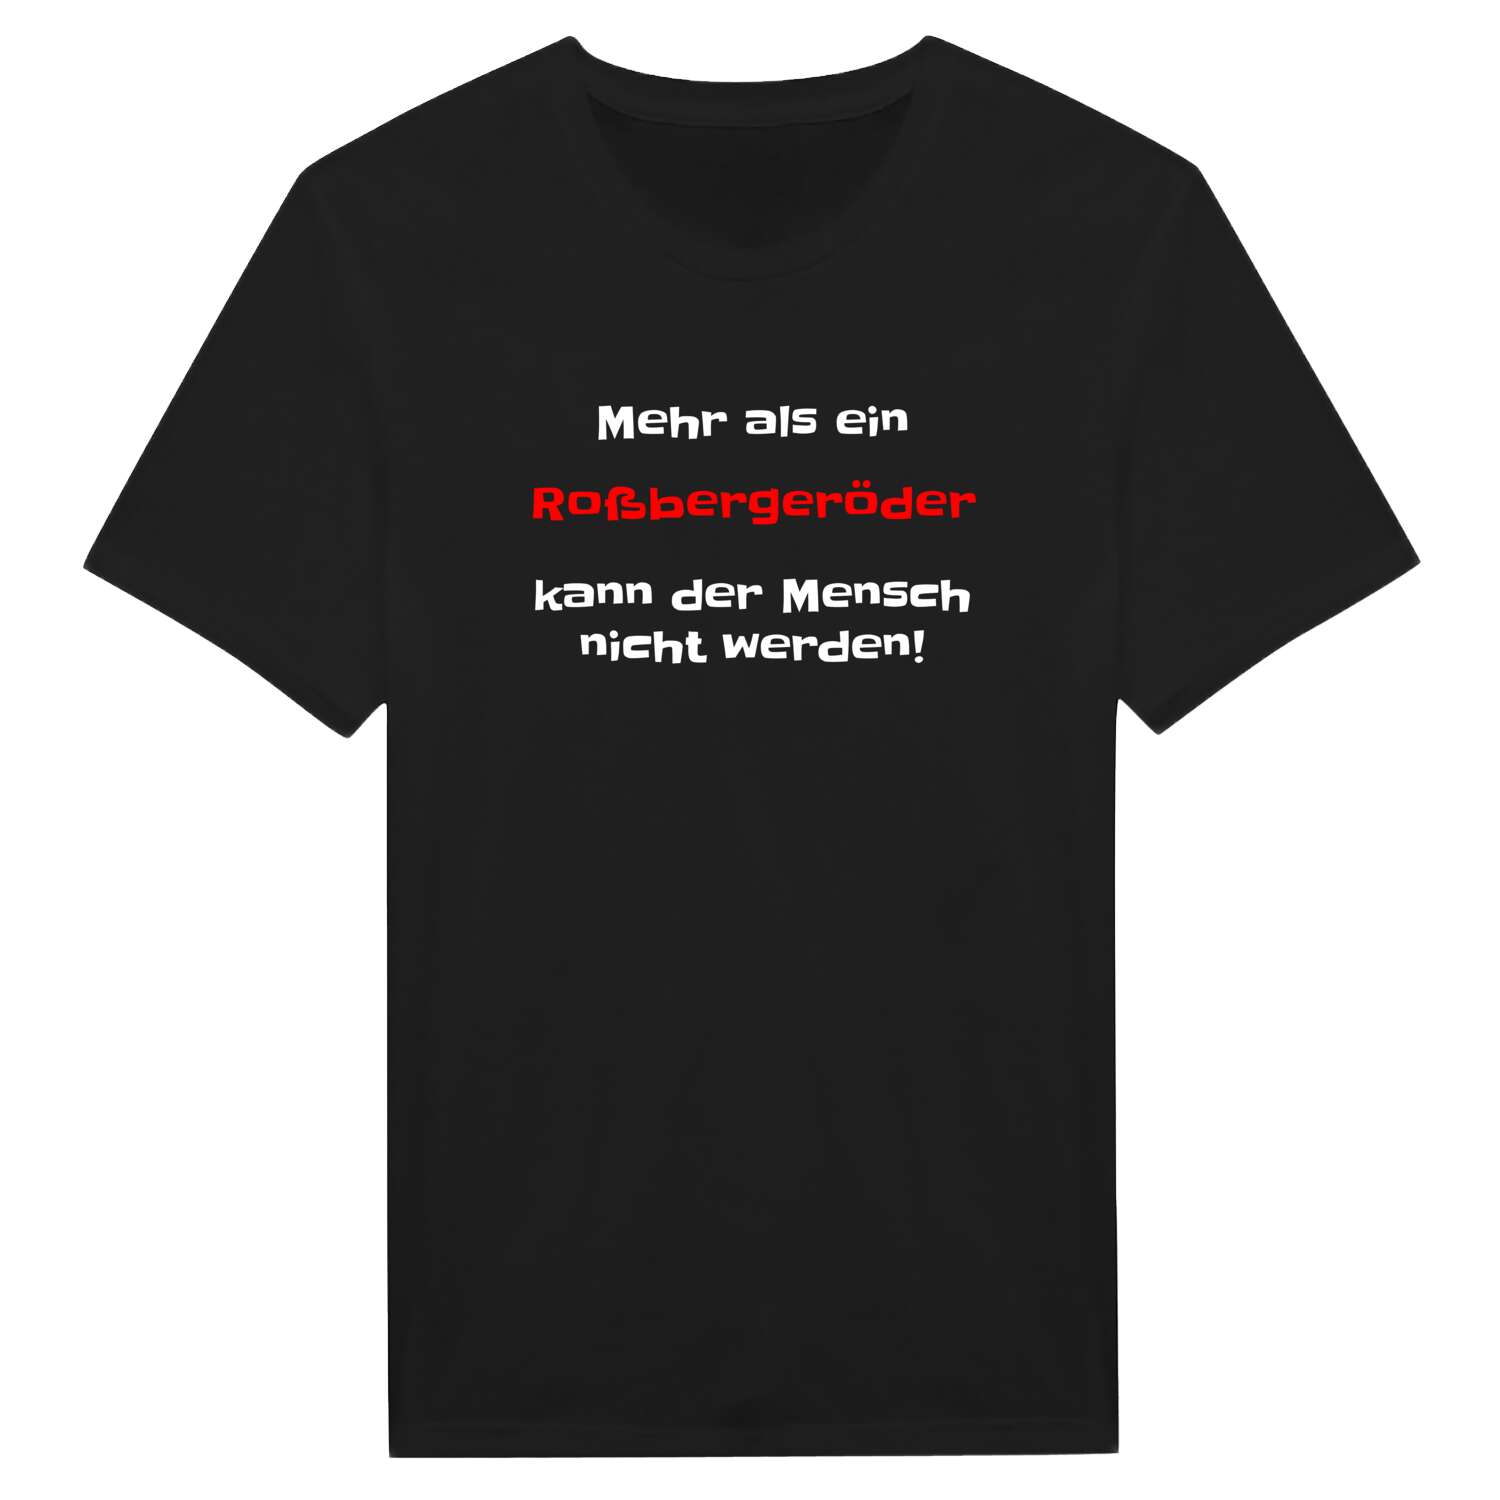 Roßbergeröd T-Shirt »Mehr als ein«